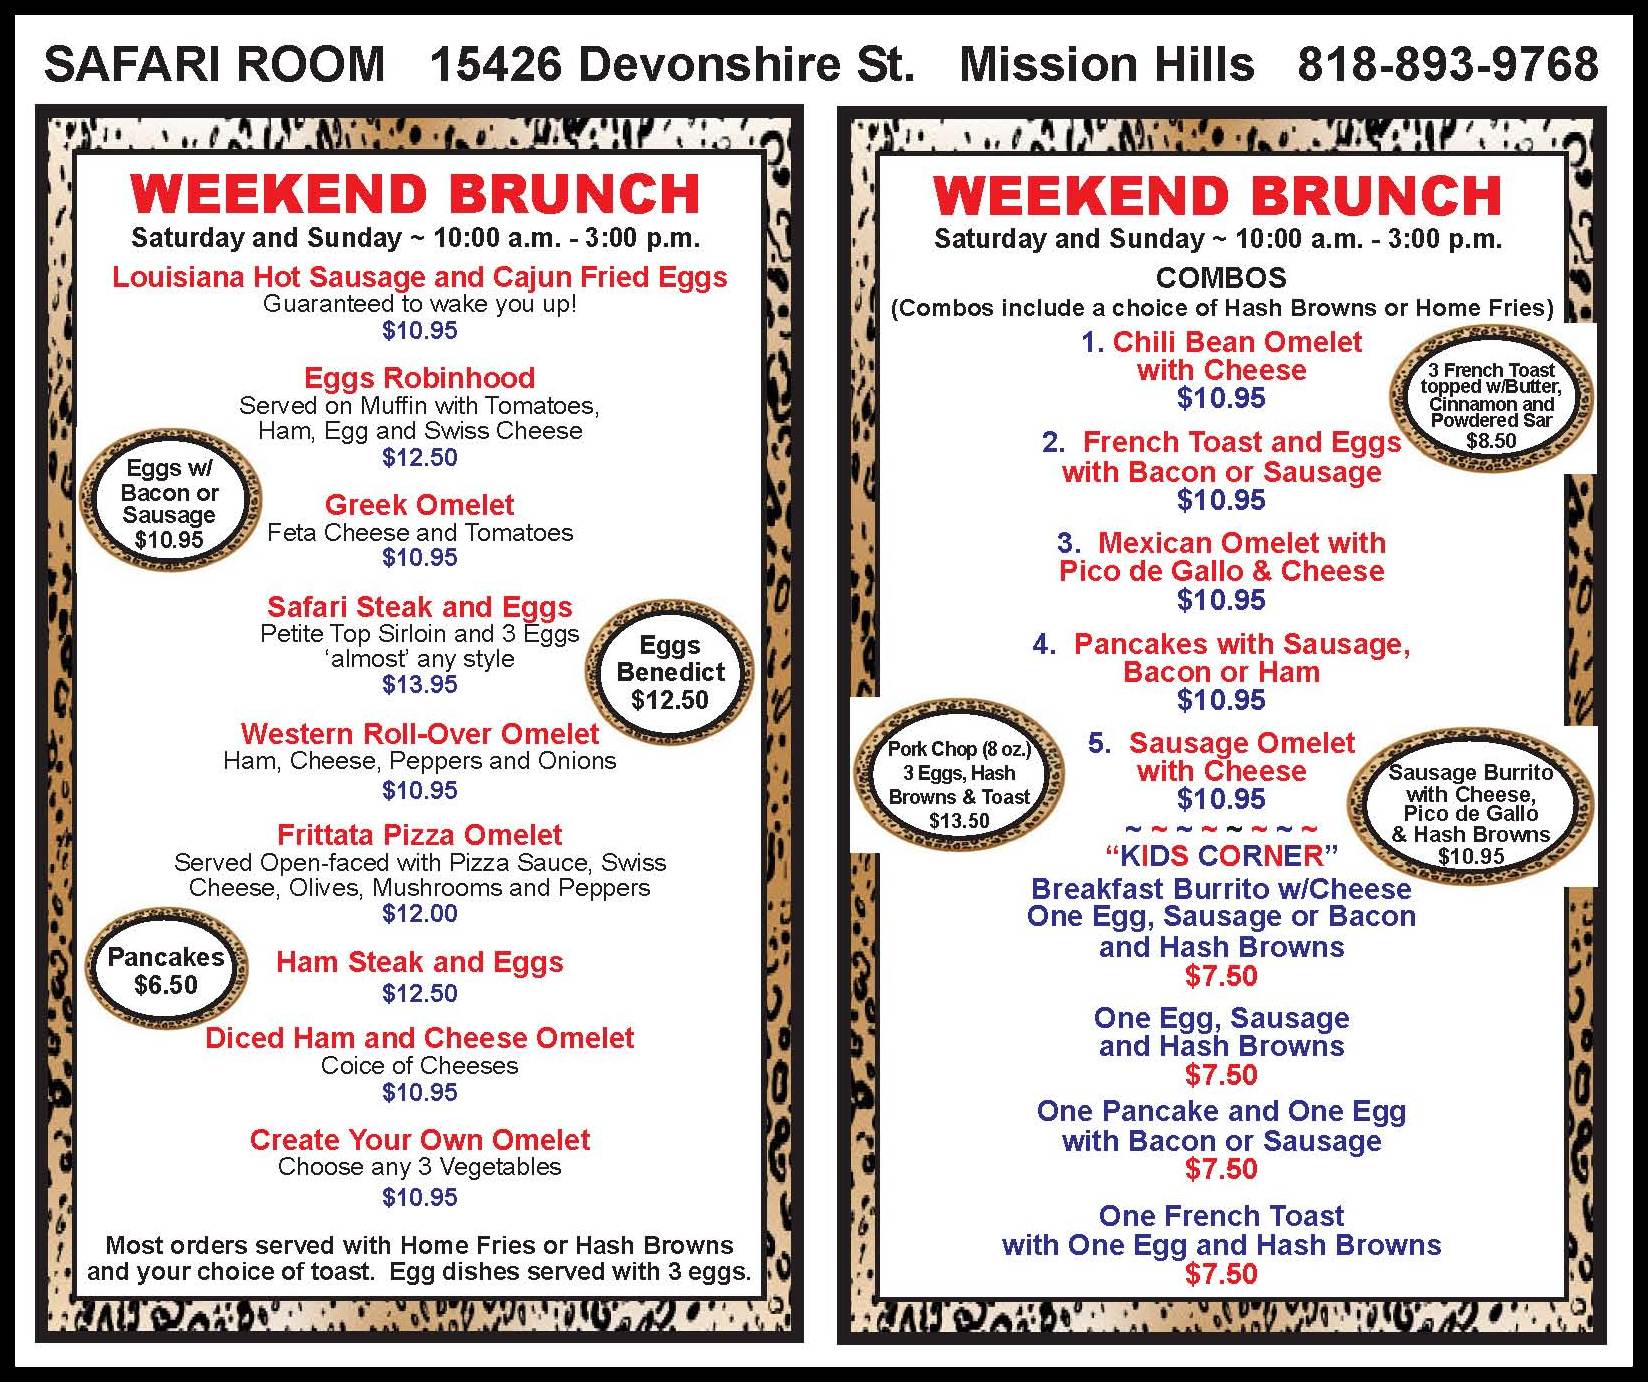 safari room mission hills menu